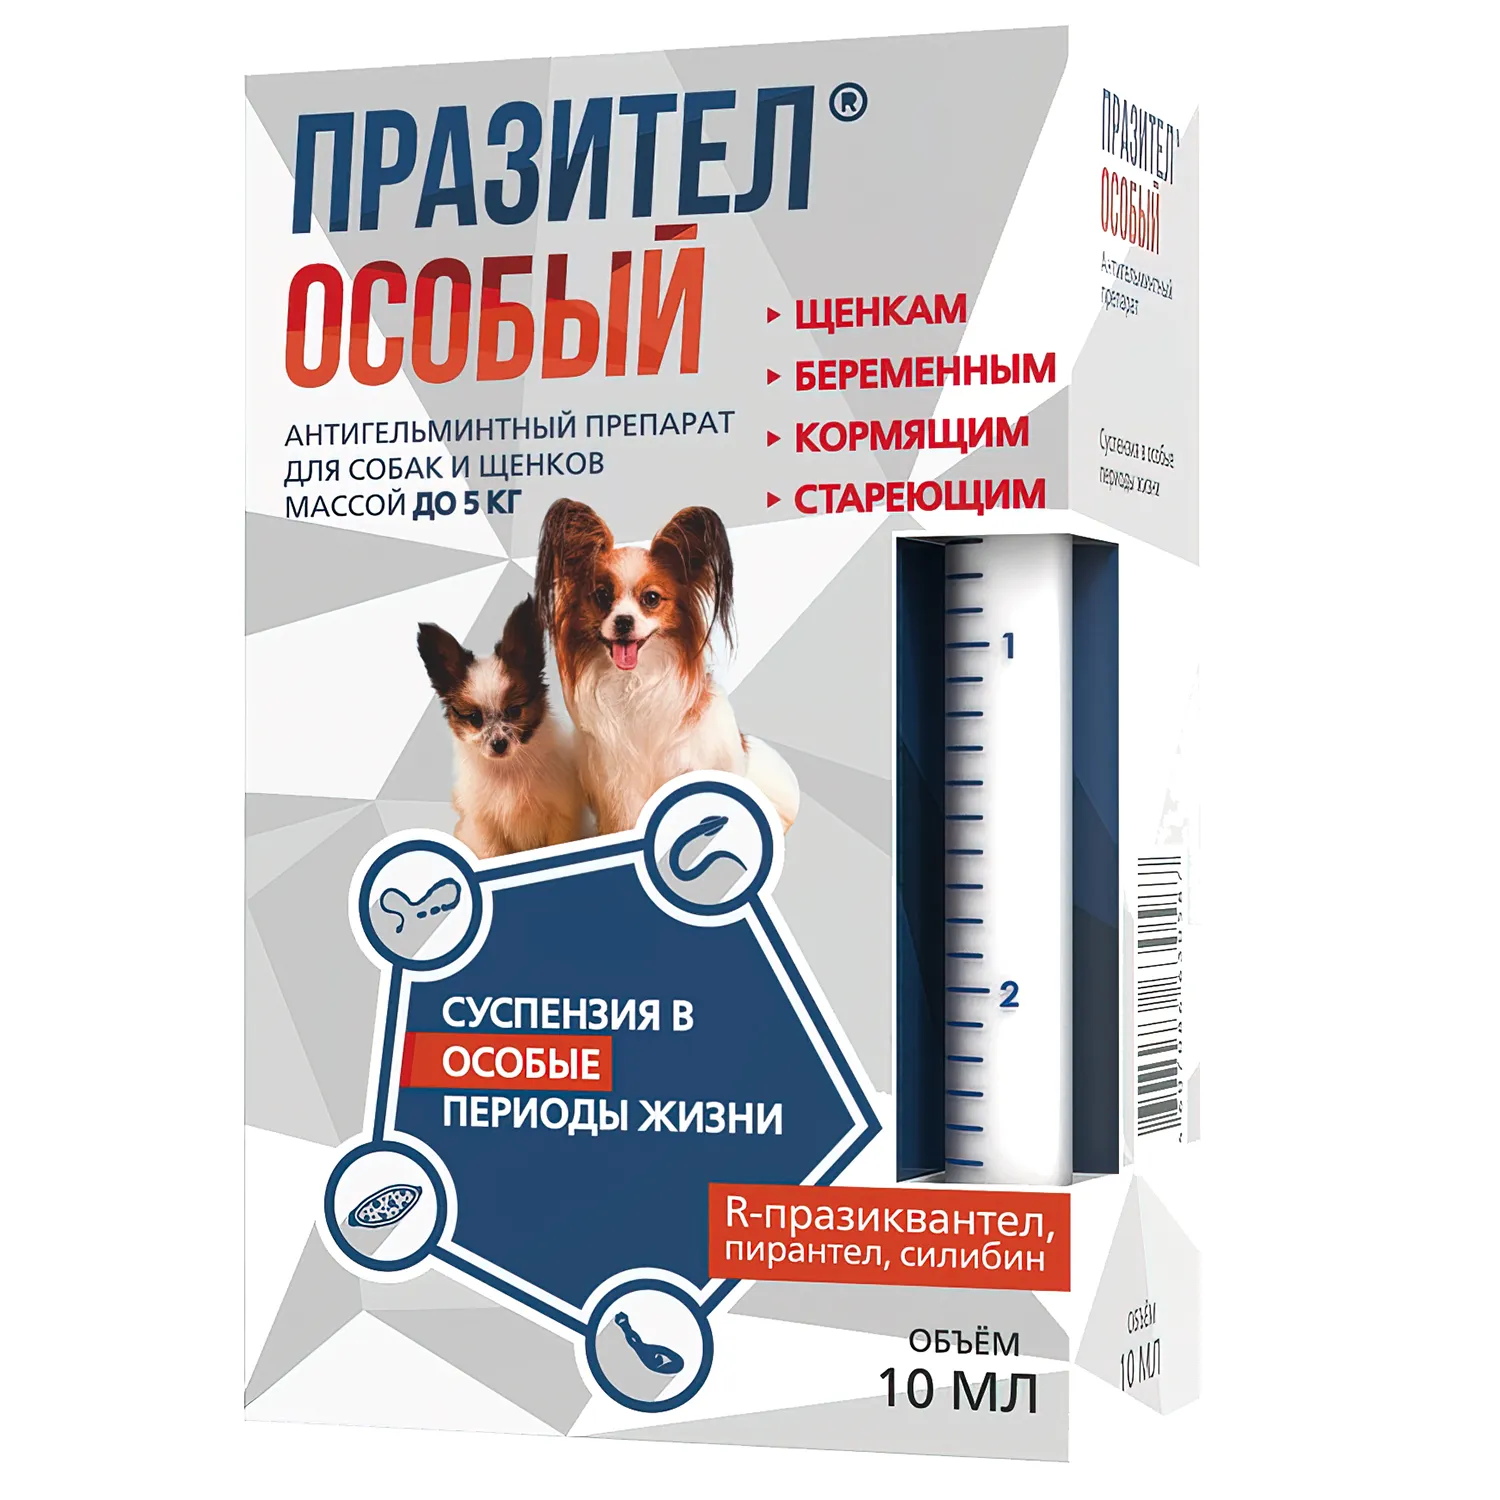 Суспензия Празител особый для собак и щенков до 5 кг, 10 мл